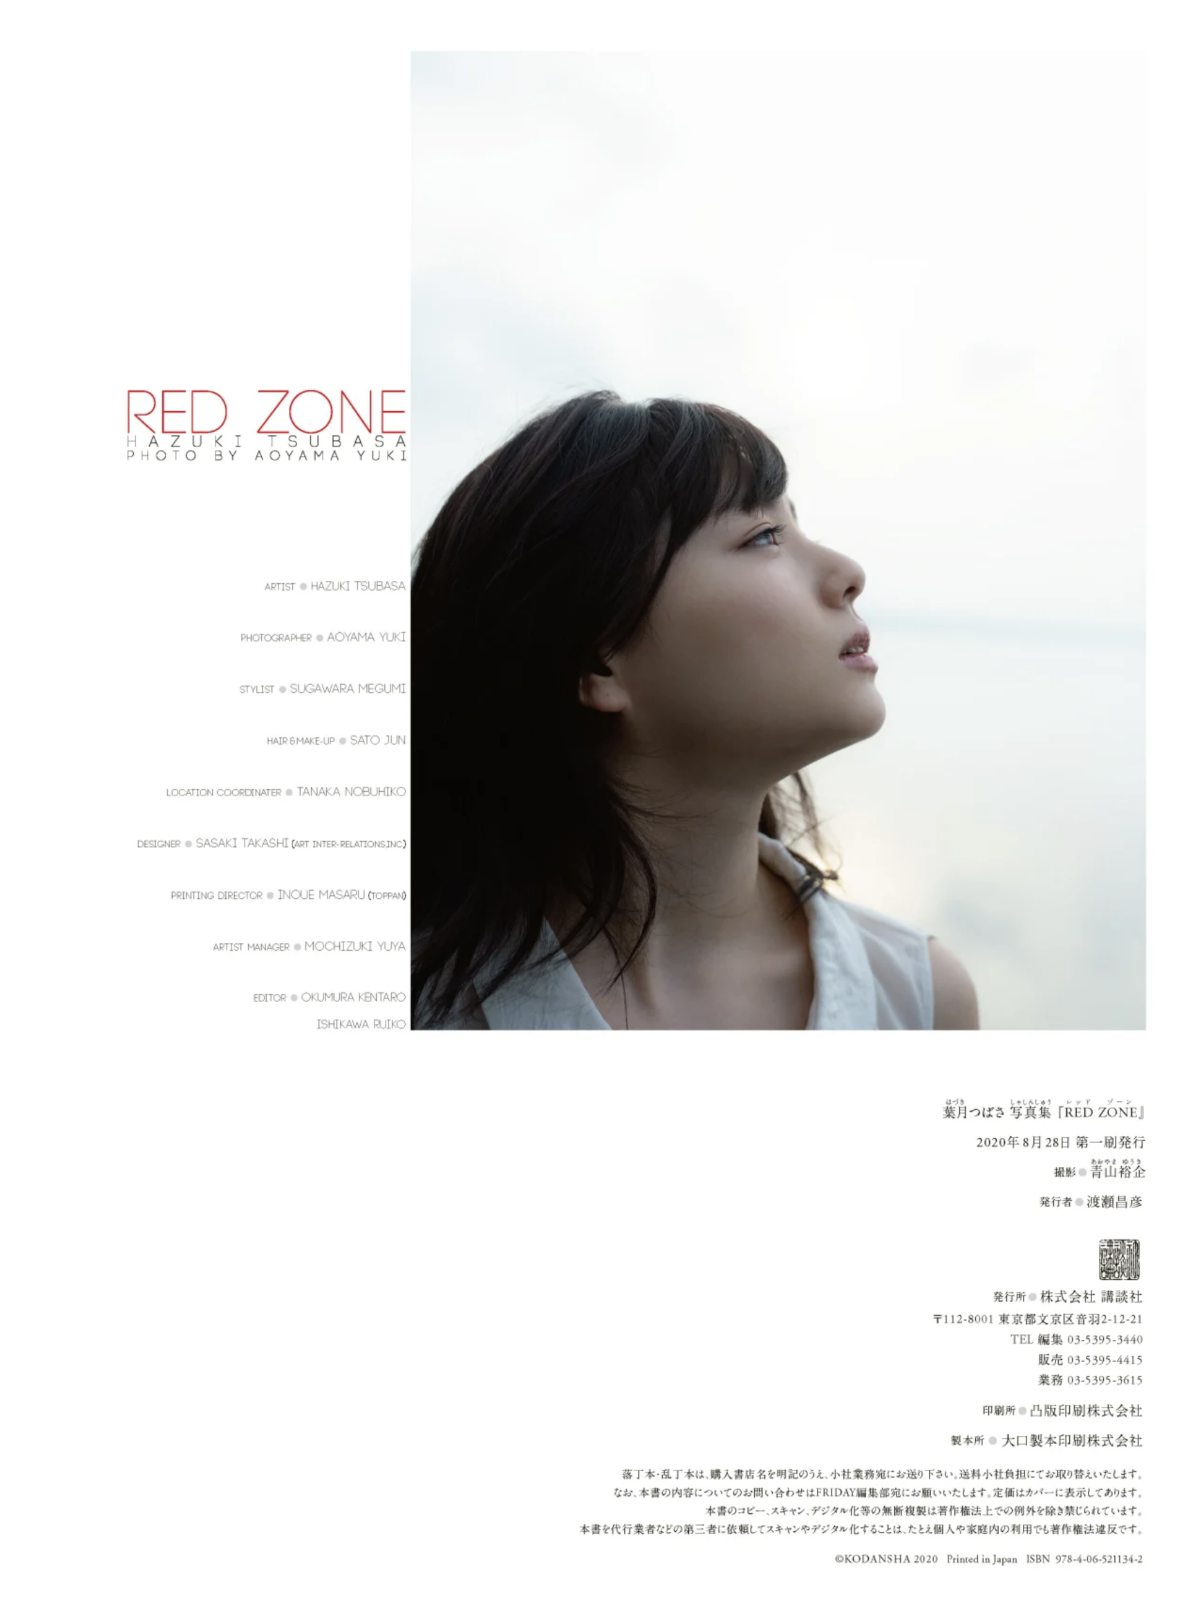 Photobook Tsubasa Hazuki 葉月つばさ RED ZONE 2020 08 31 0079 7091225564.jpg